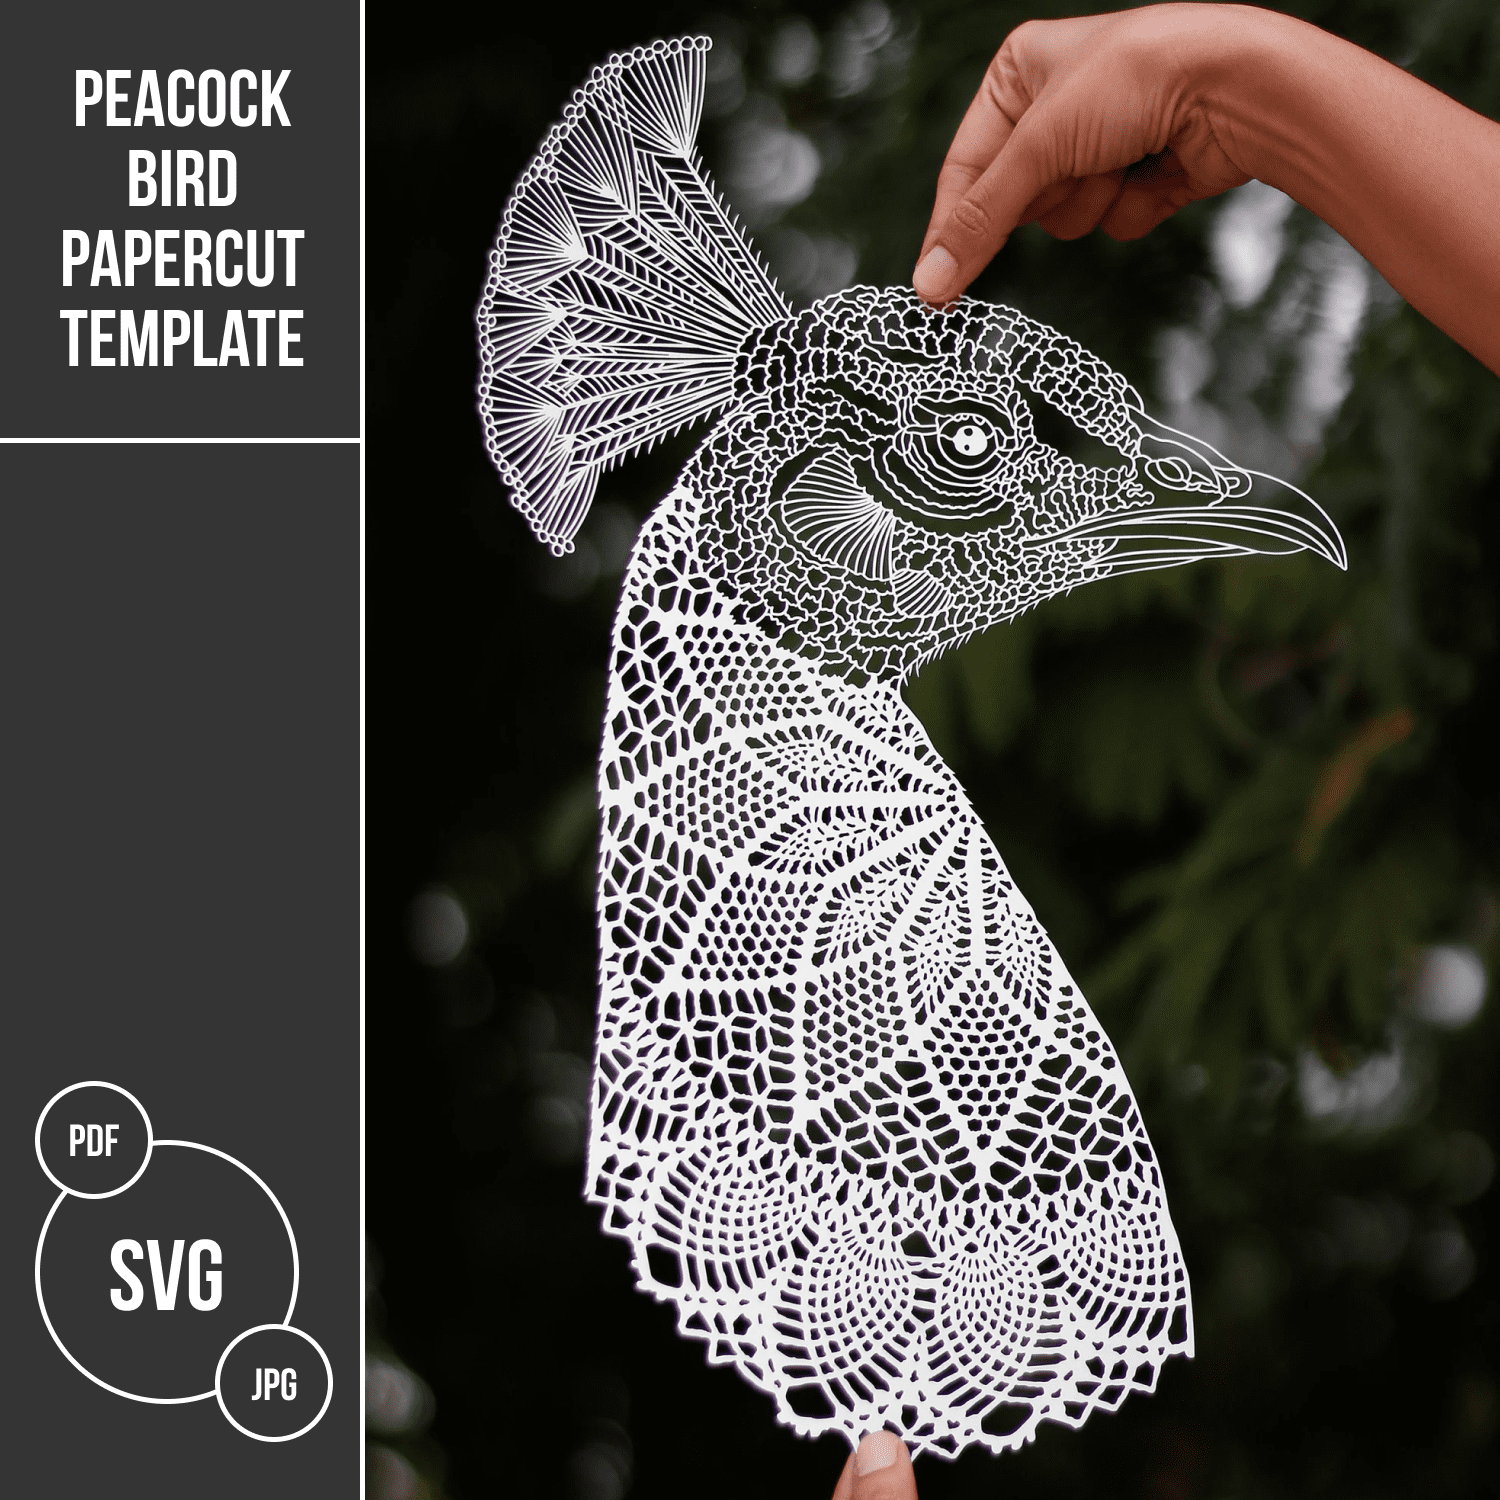 Peacock bird Papercut Template.